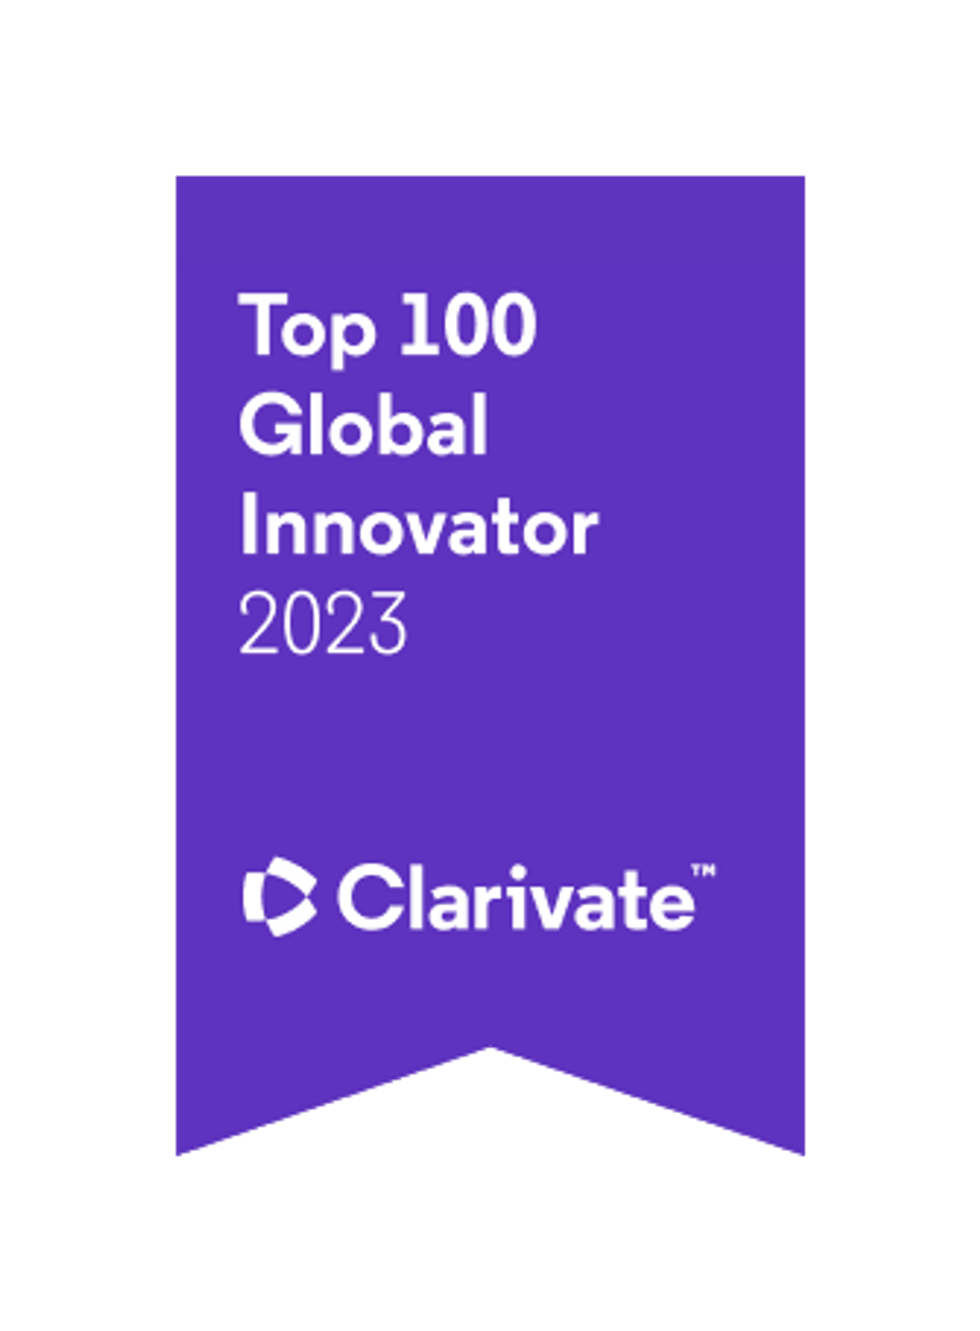 Top 100 Global Innovator 2023 image